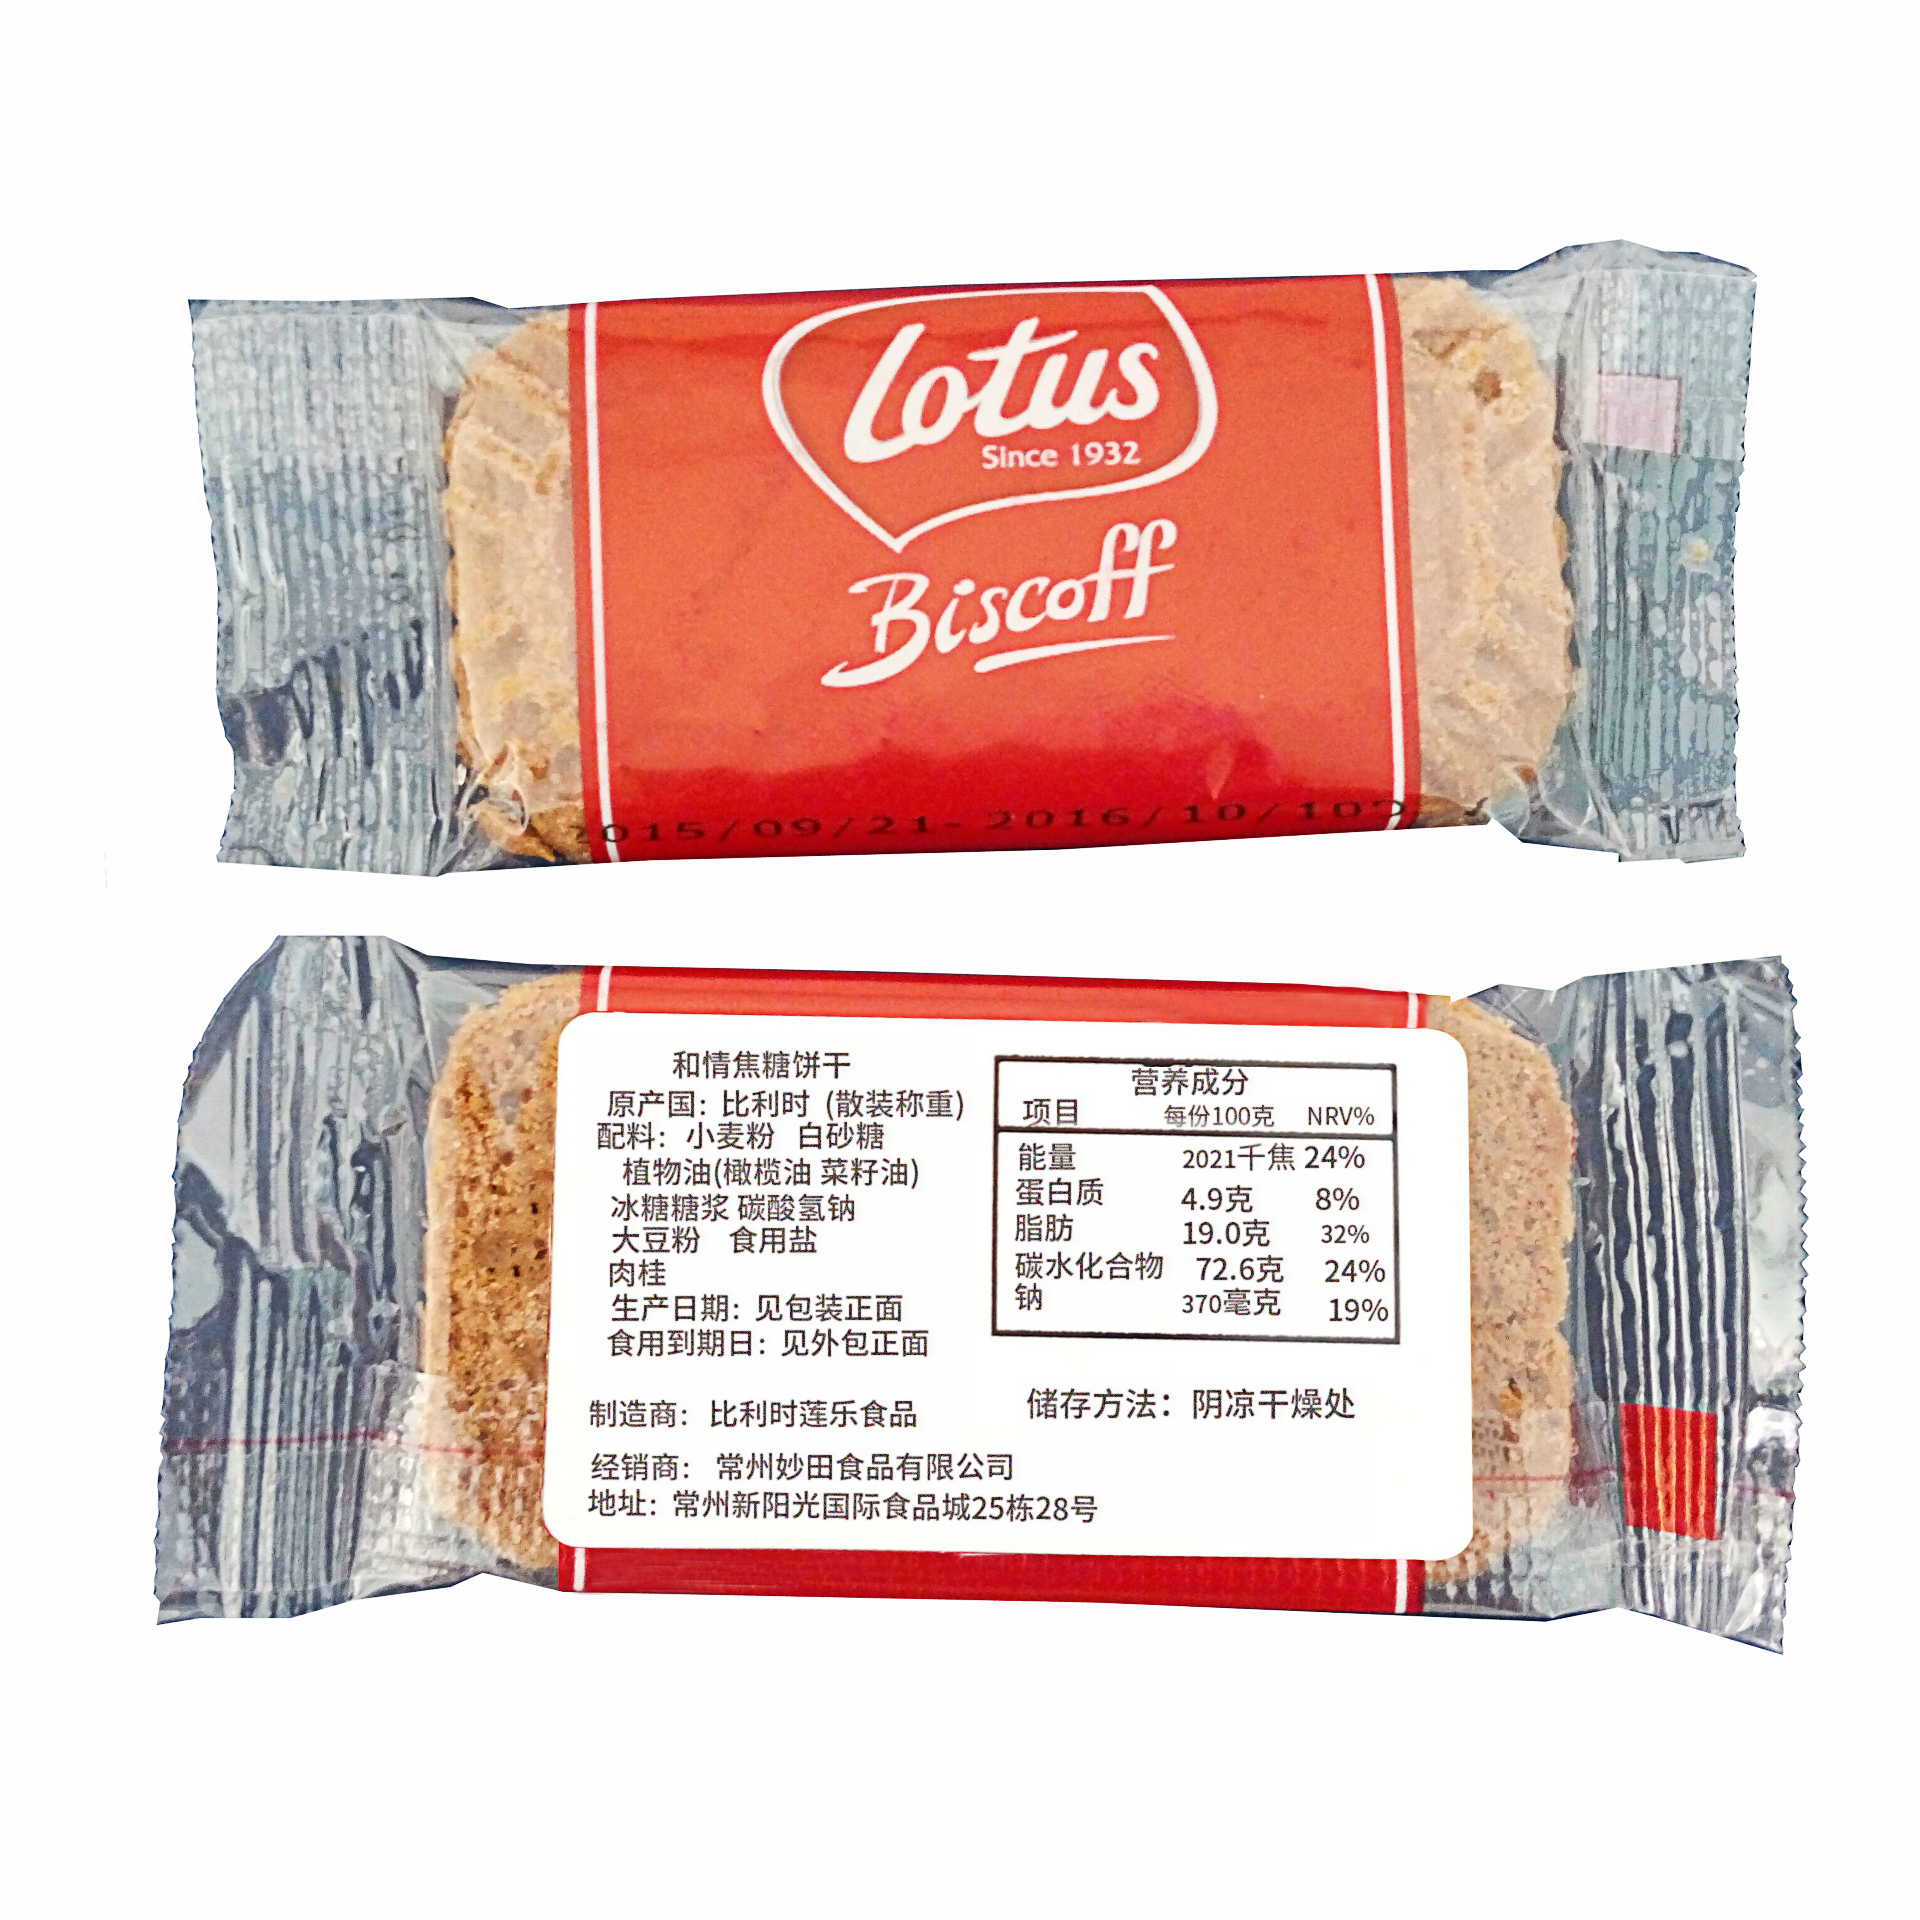 进口零食薯片等袋类食品的包装即时打印贴标